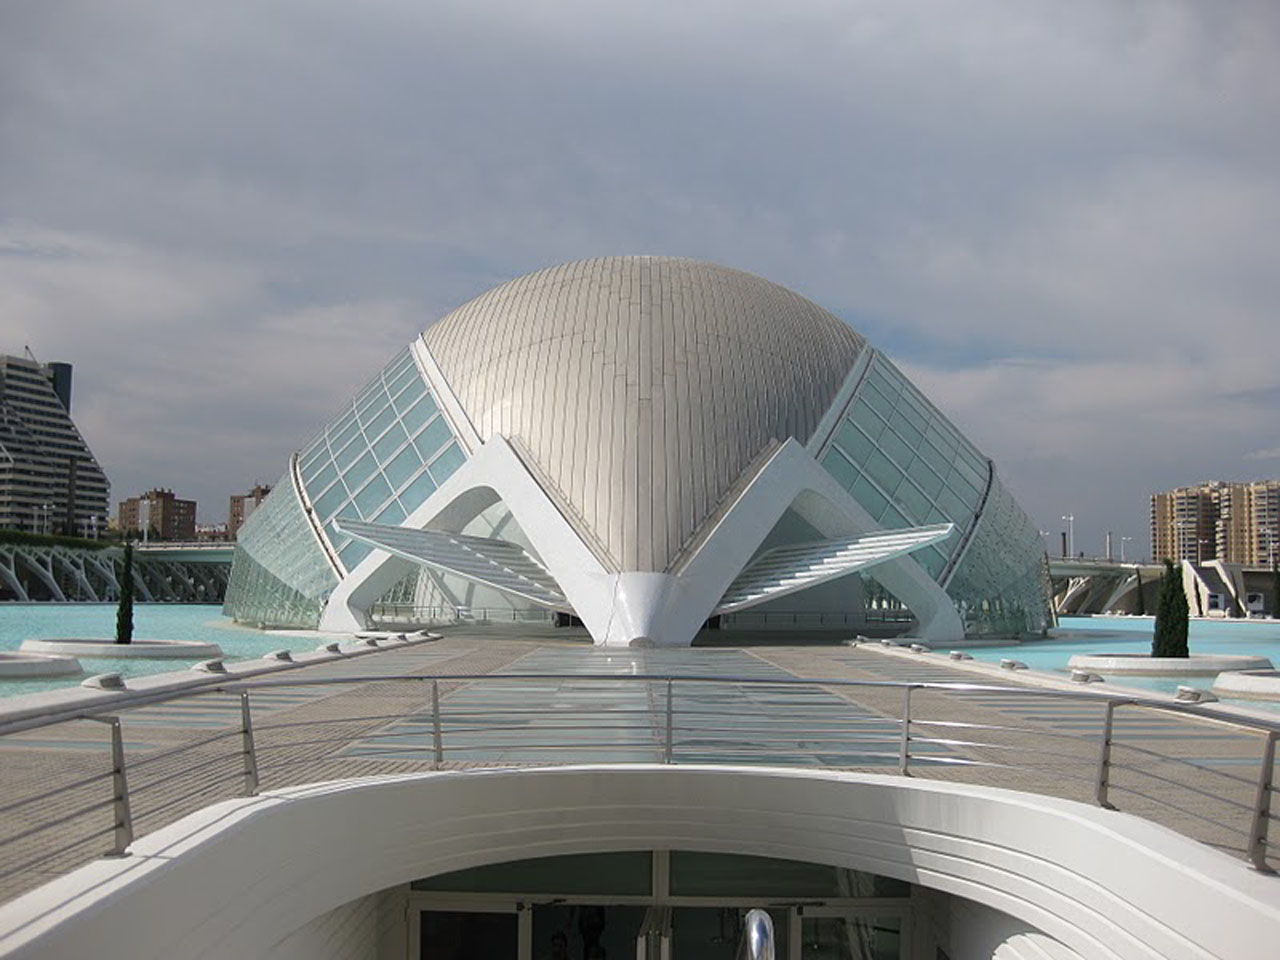 Valencia’s City of Arts and Sciences by Santiago Calatrava